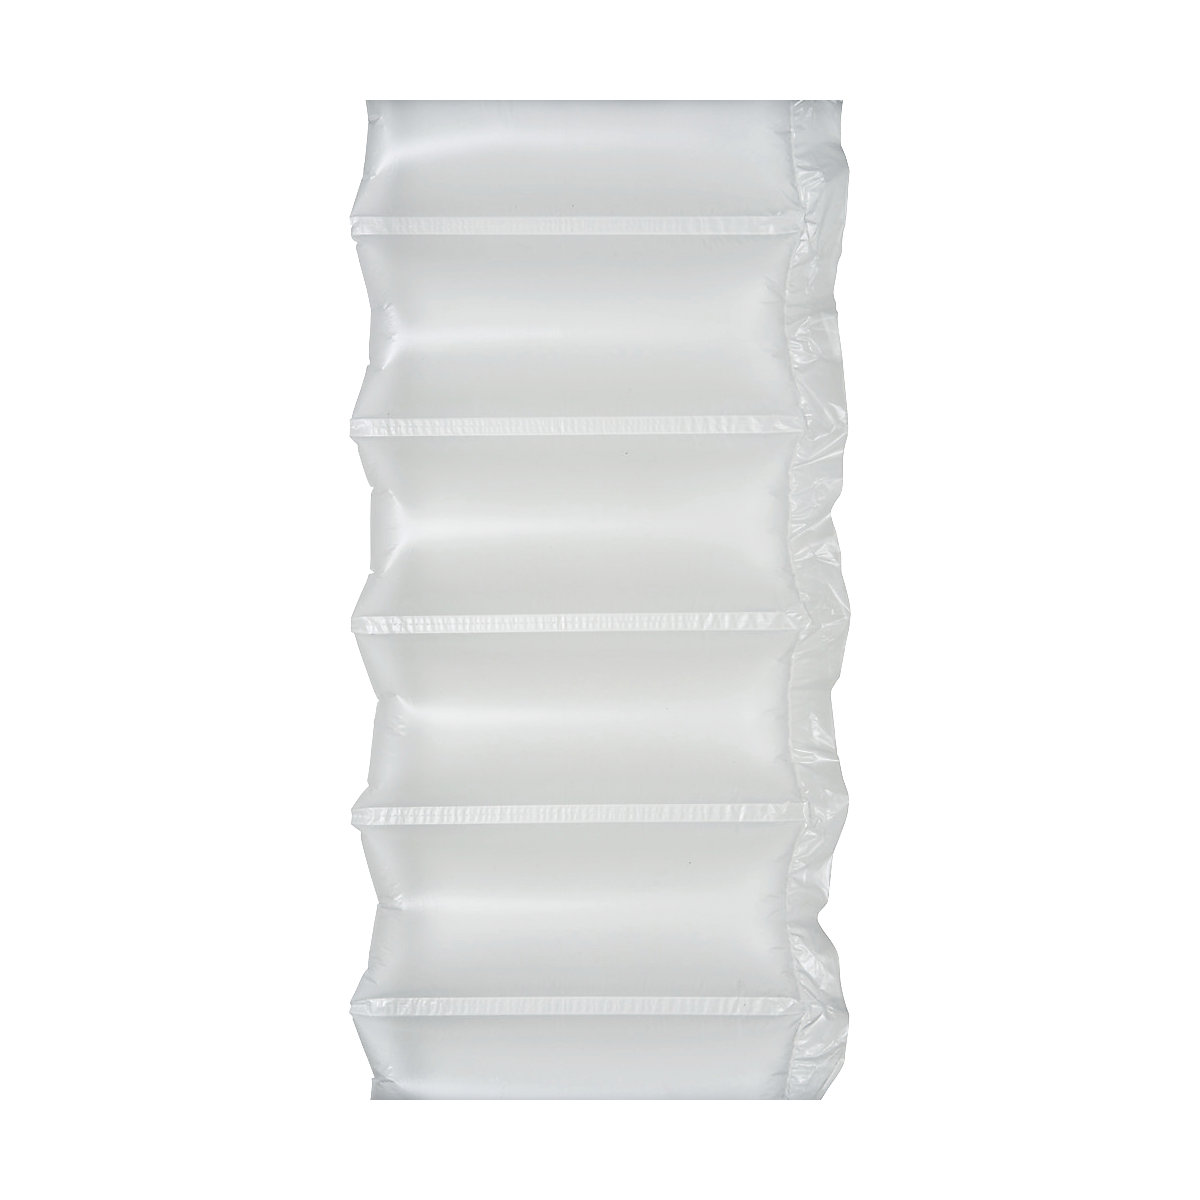 Pellicola per cuscini ad aria AirWave®, pellicola in PE, lunghezza 600 m, largh. x alt. 300 x 130 mm-1